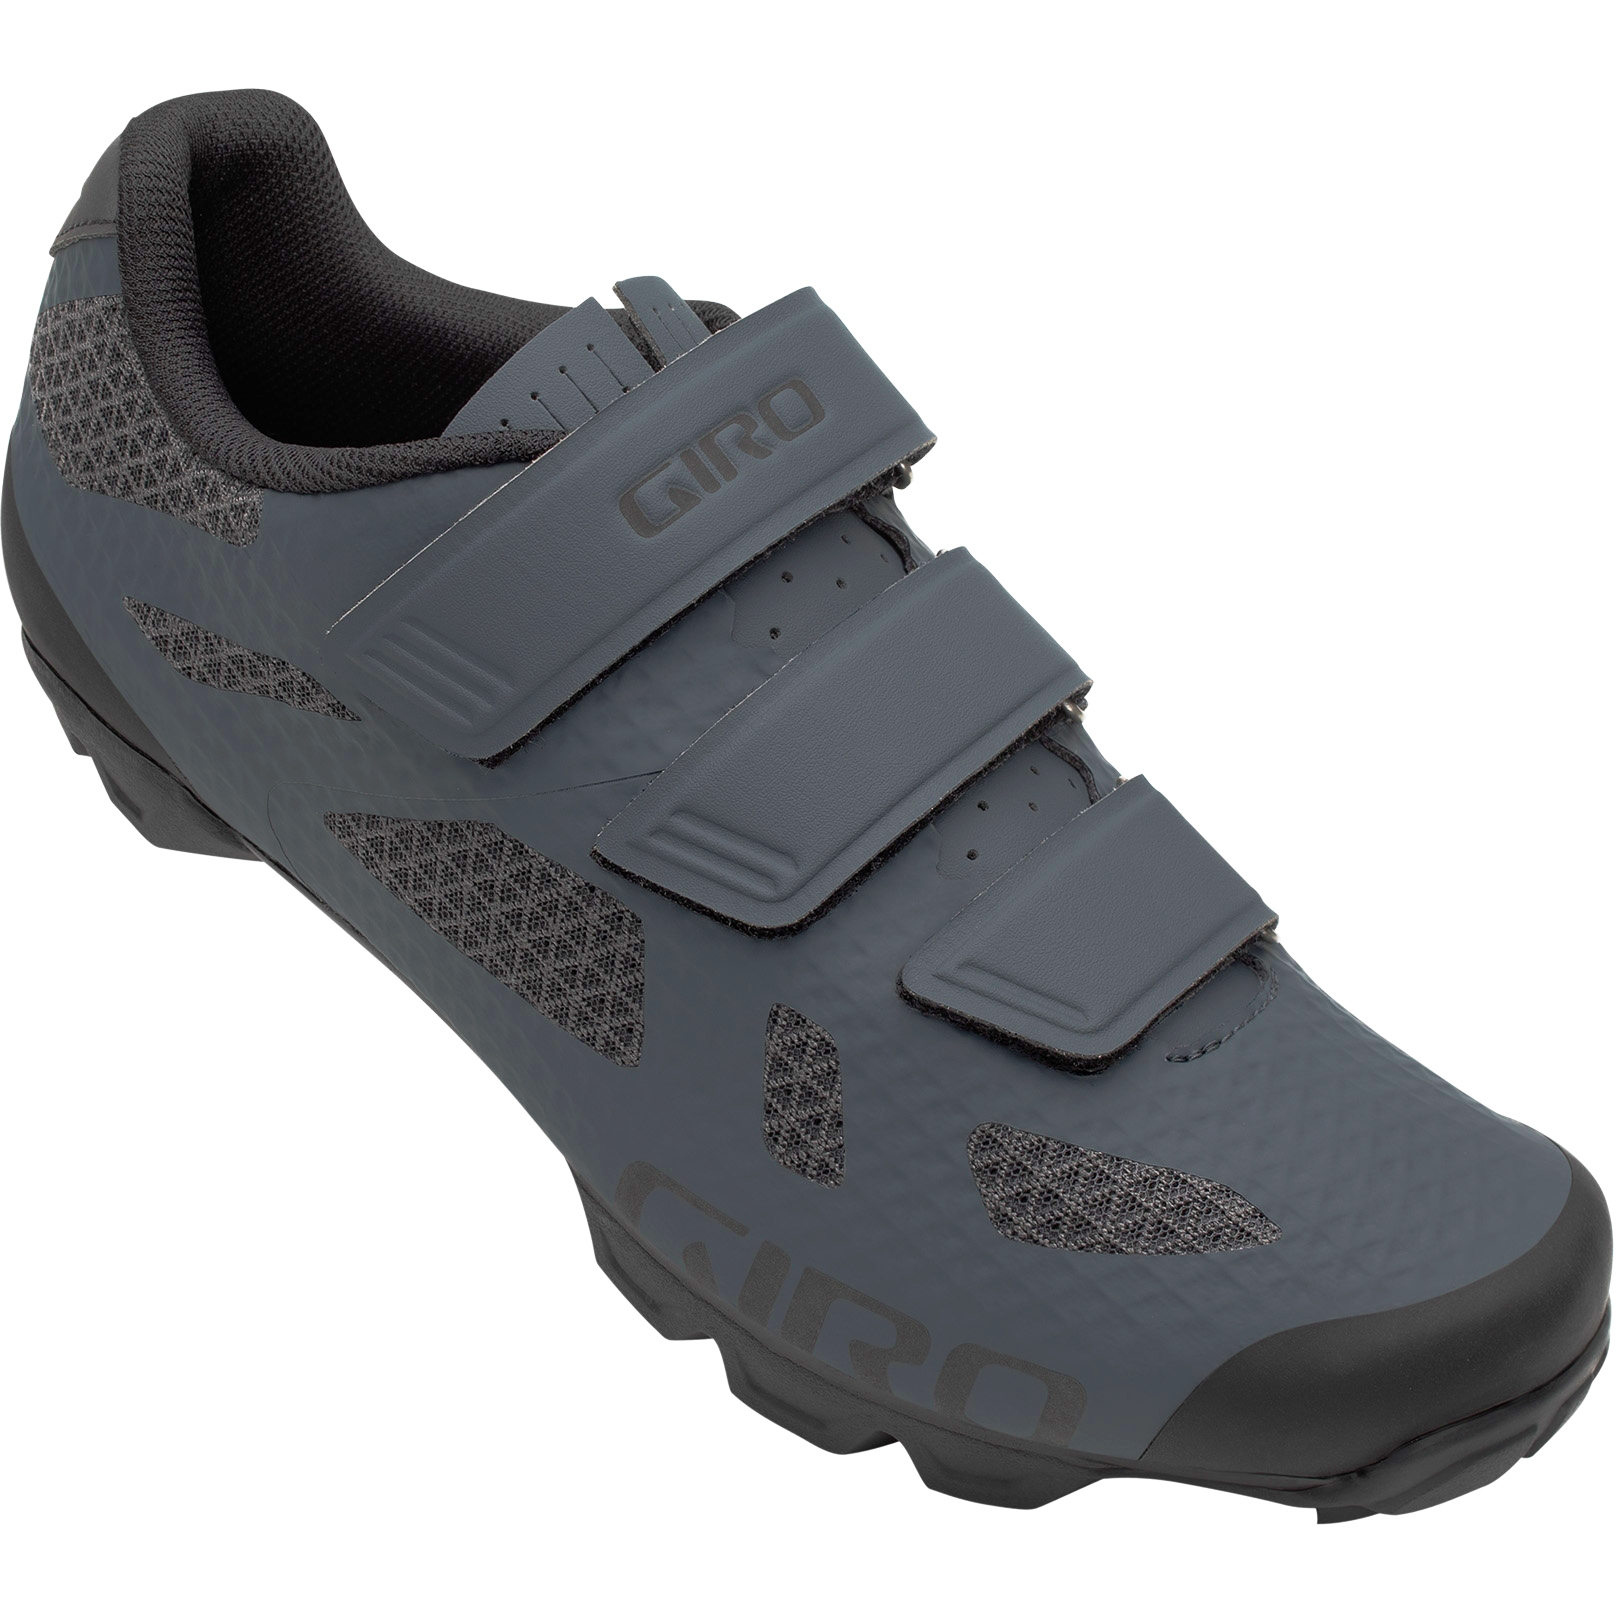 Produktbild von Giro Ranger MTB Schuhe - portaro grey